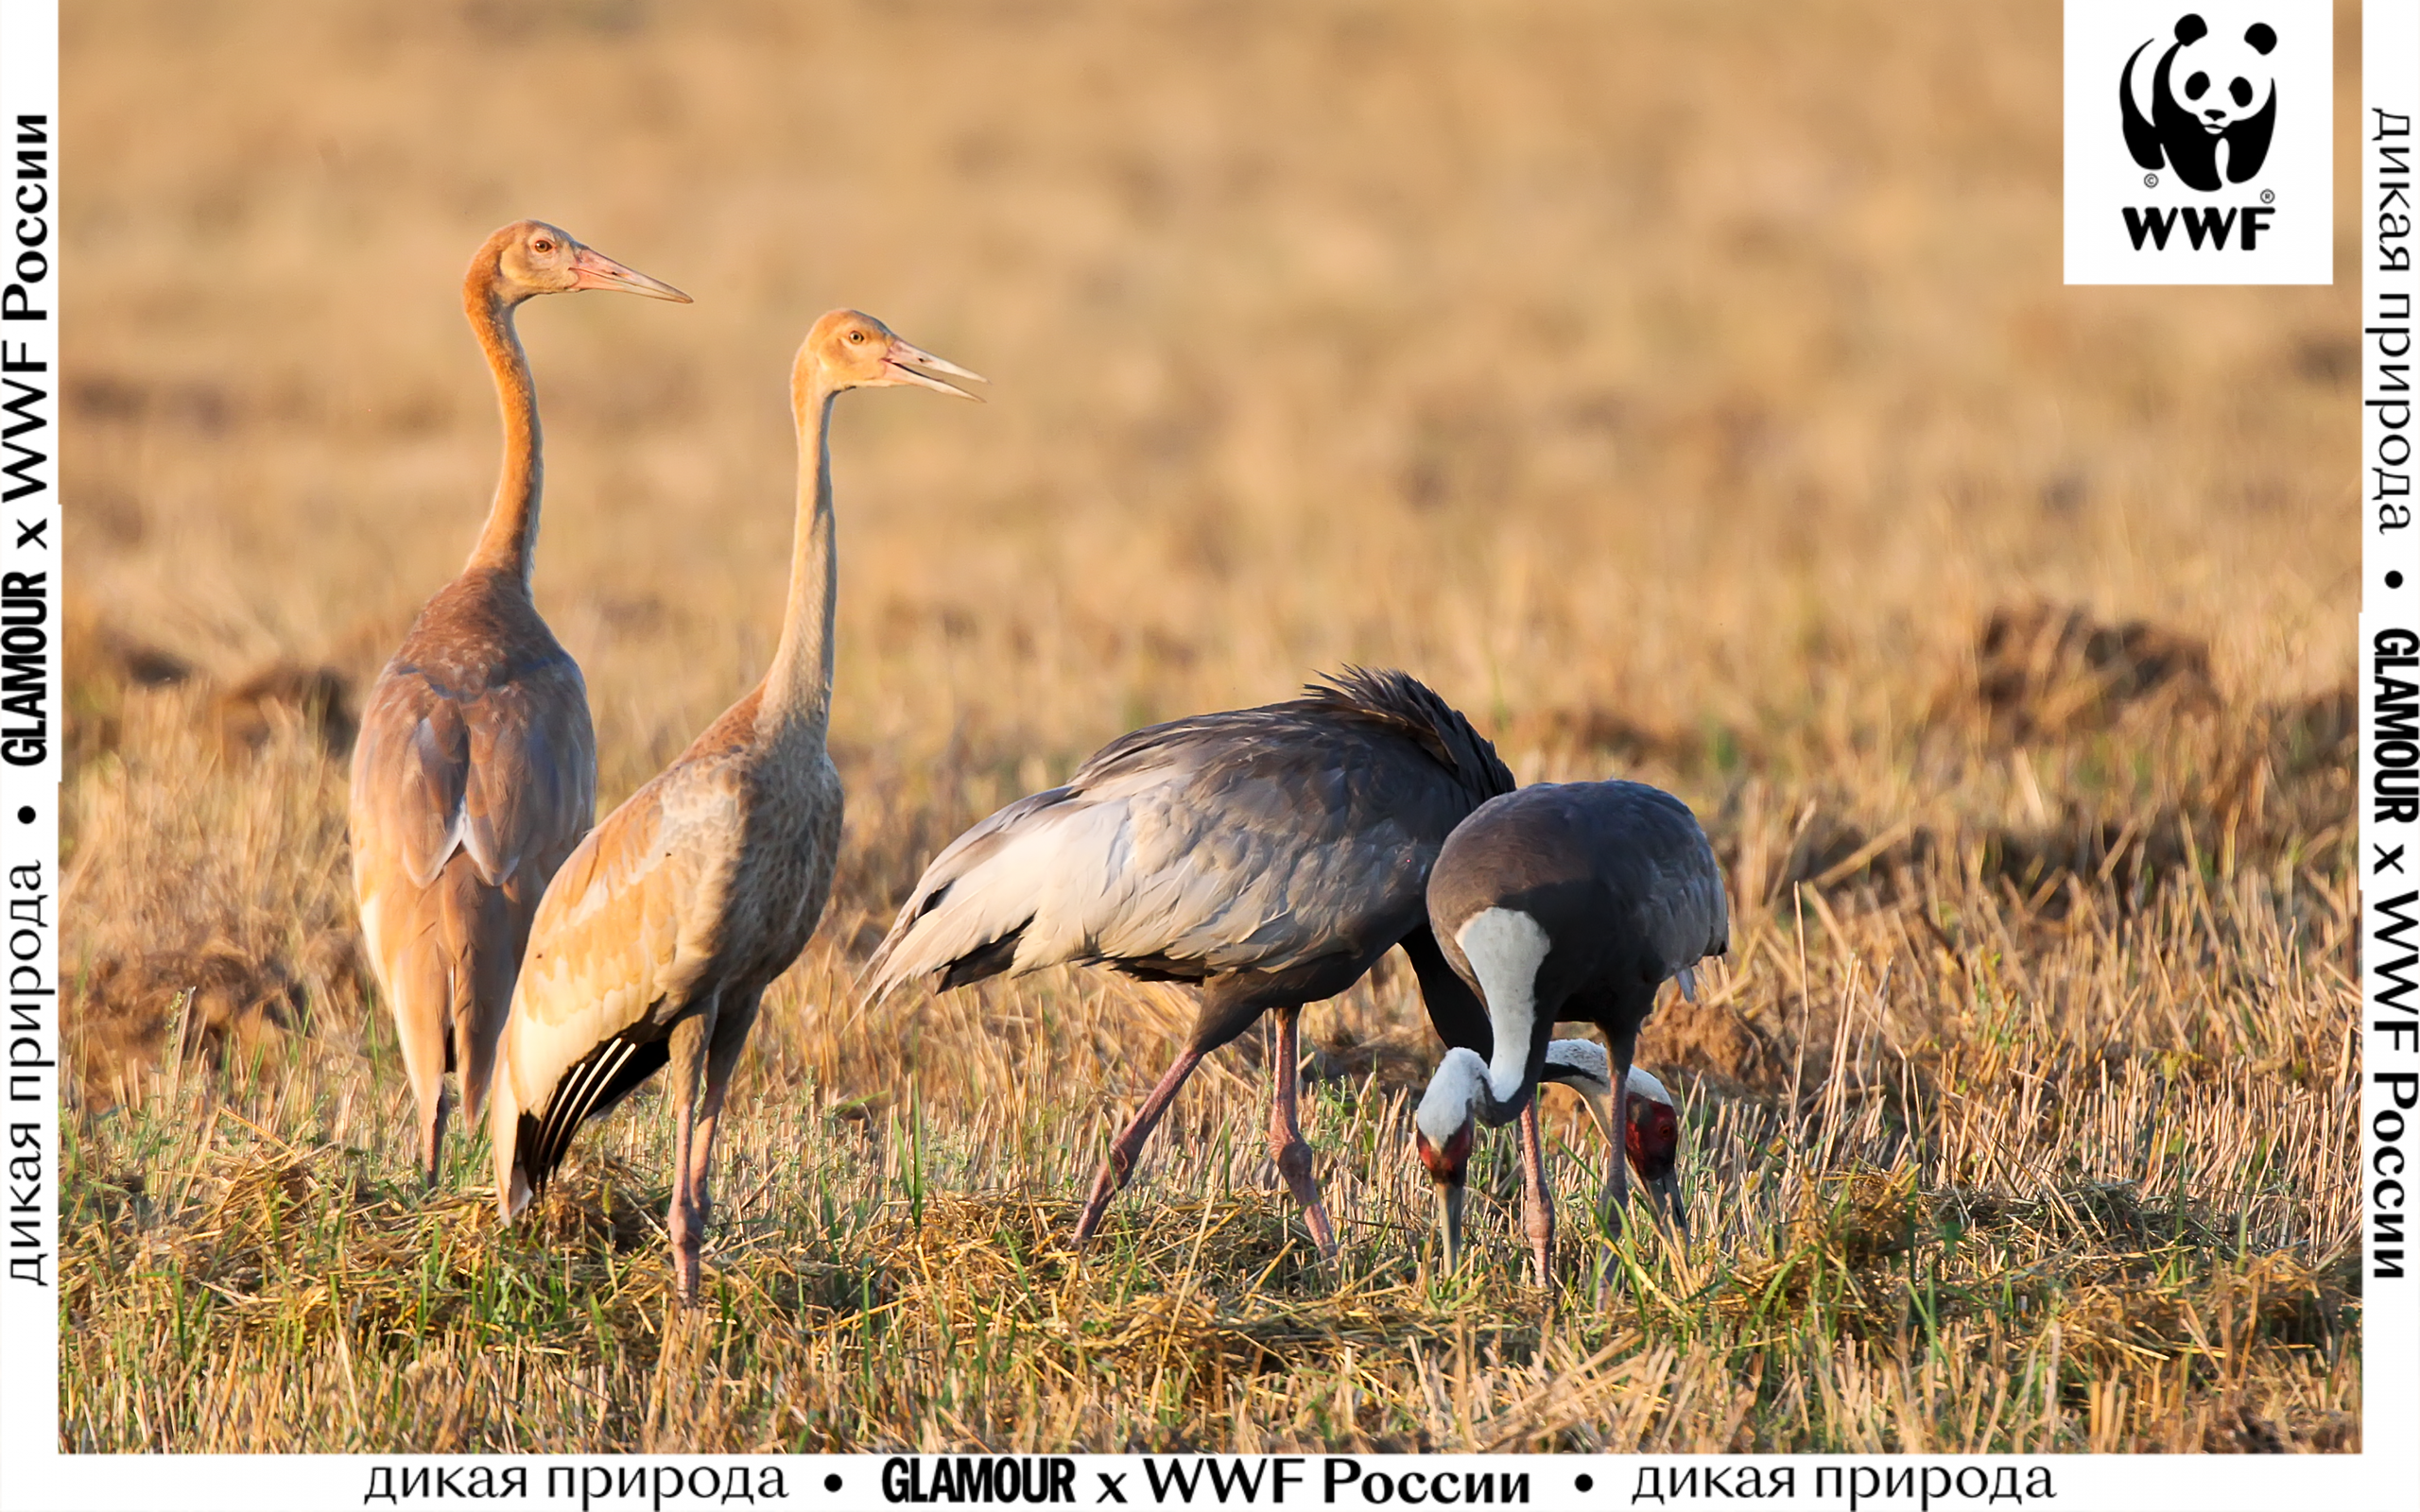 Что угрожает перелетным птицам и как их сохранить 3 причины посмотреть минисериал WWF России «Журавлиные истории»